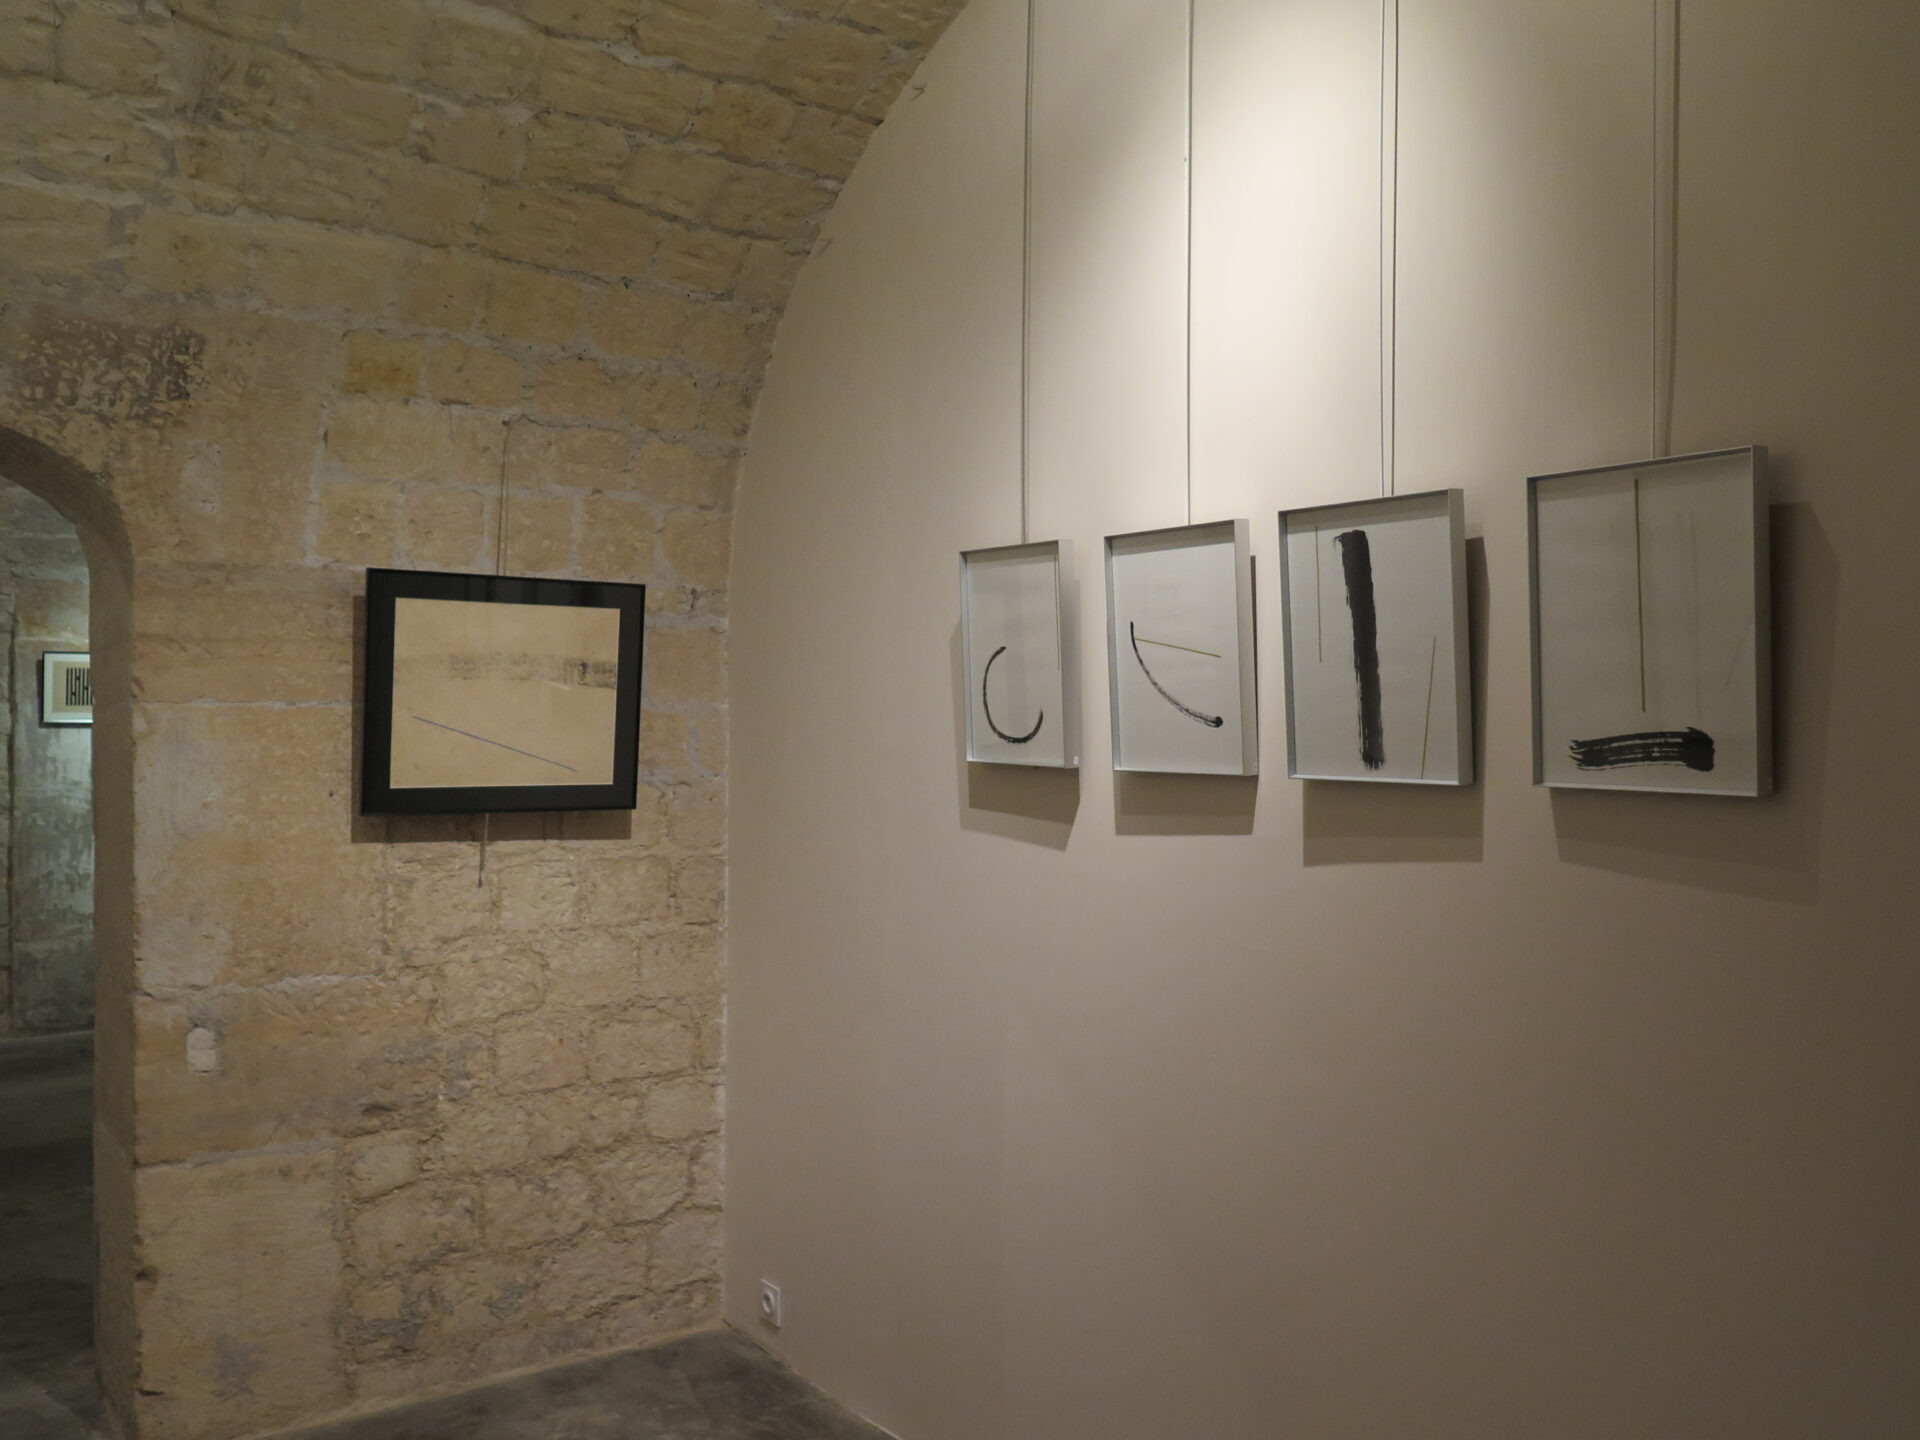 2015 - Galerie Impressions, Paris (75003)